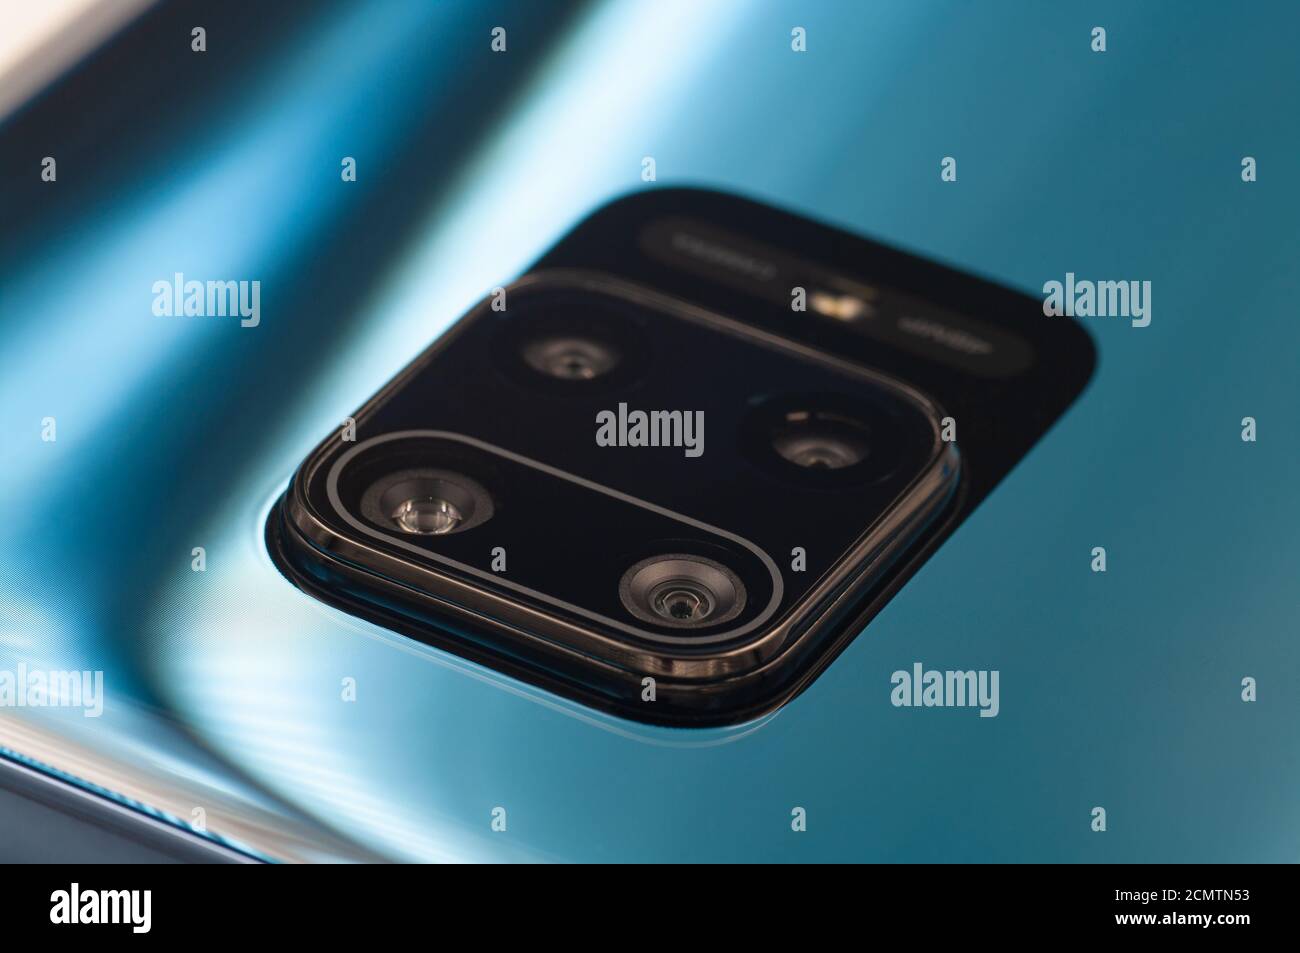 Telefono moderno blu con obiettivo a quattro fotocamere e primo piano con flash. Messa a fuoco selettiva Foto Stock